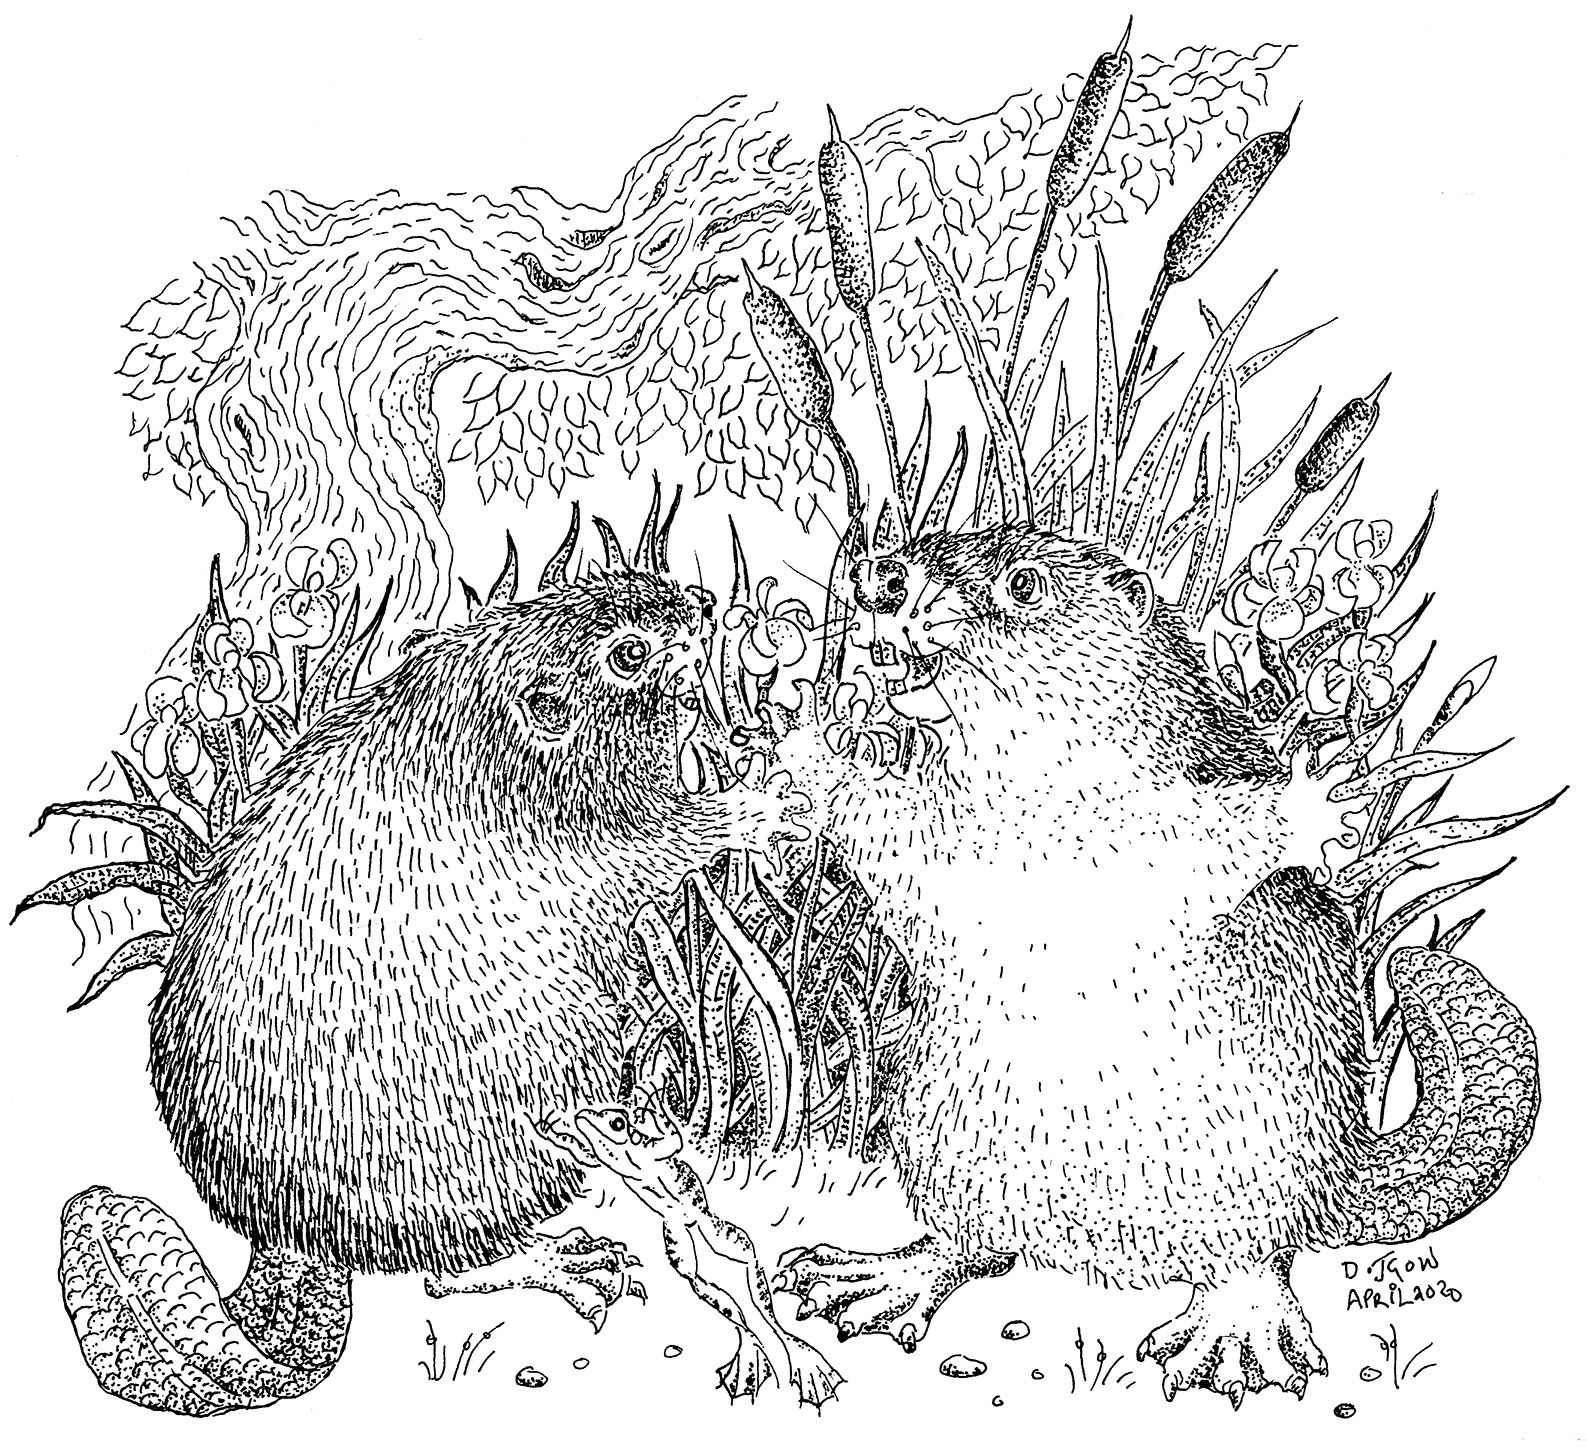 Drawing of beaver kits